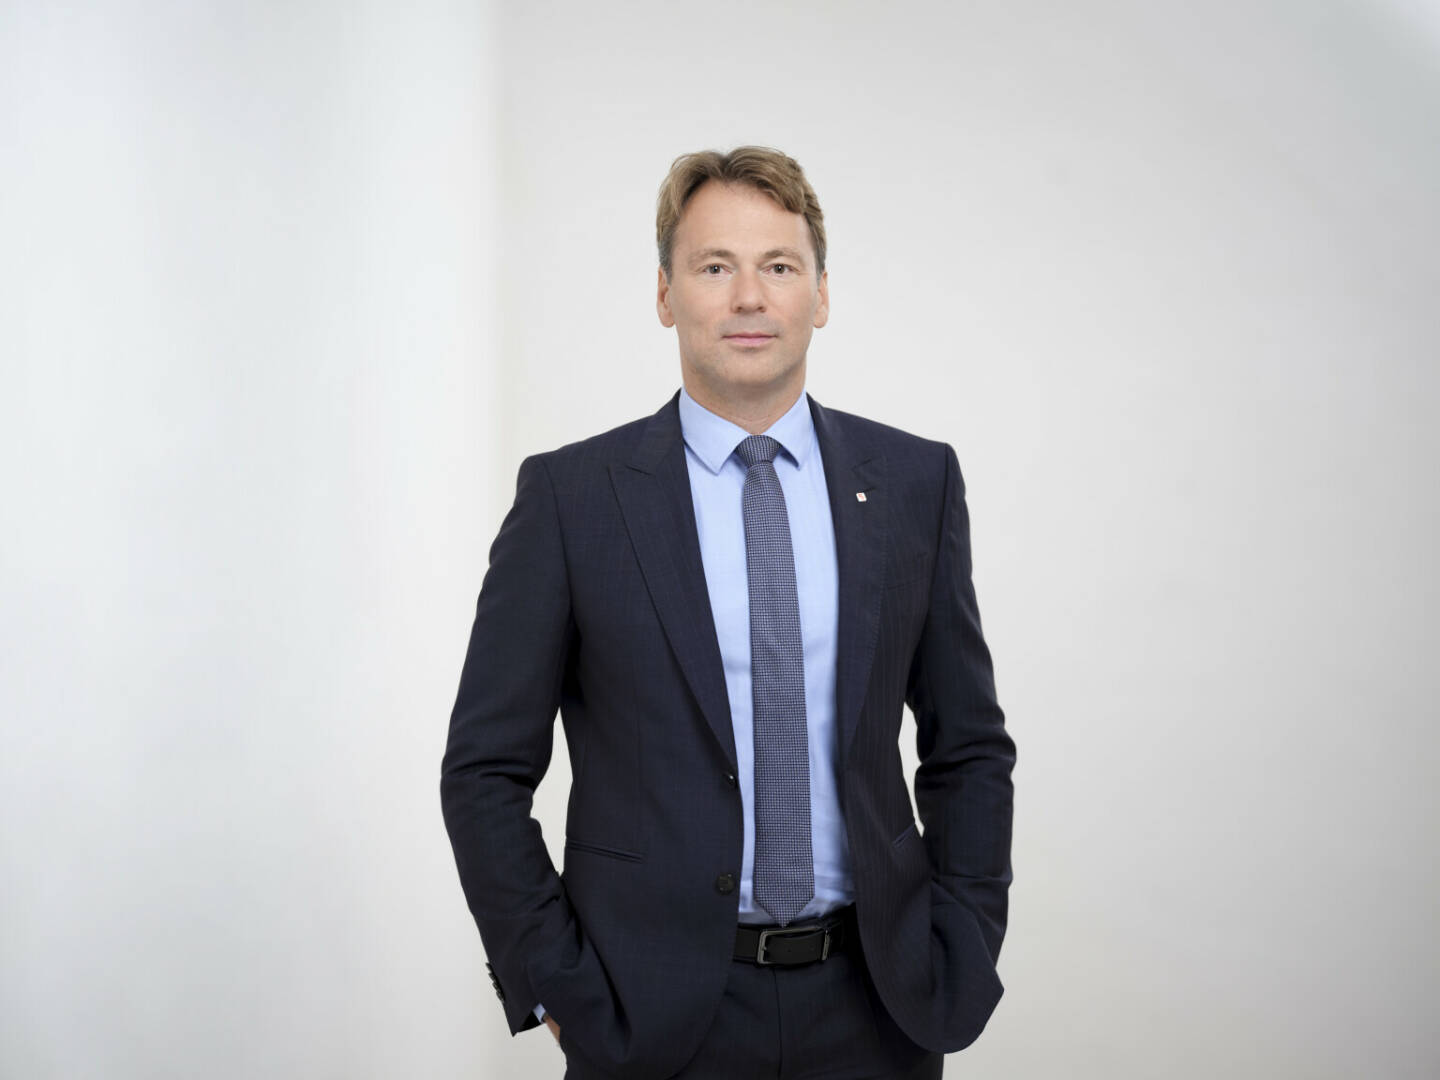 Harald Riener, Vorstandsmitglied der Vienna Insurance Group und designierter Aufsichtsratsvorsitzender des Joint Venture-Unternehmens aus C-Quadrat und VIG in Polen. Credit: Ian Ehm/VIG